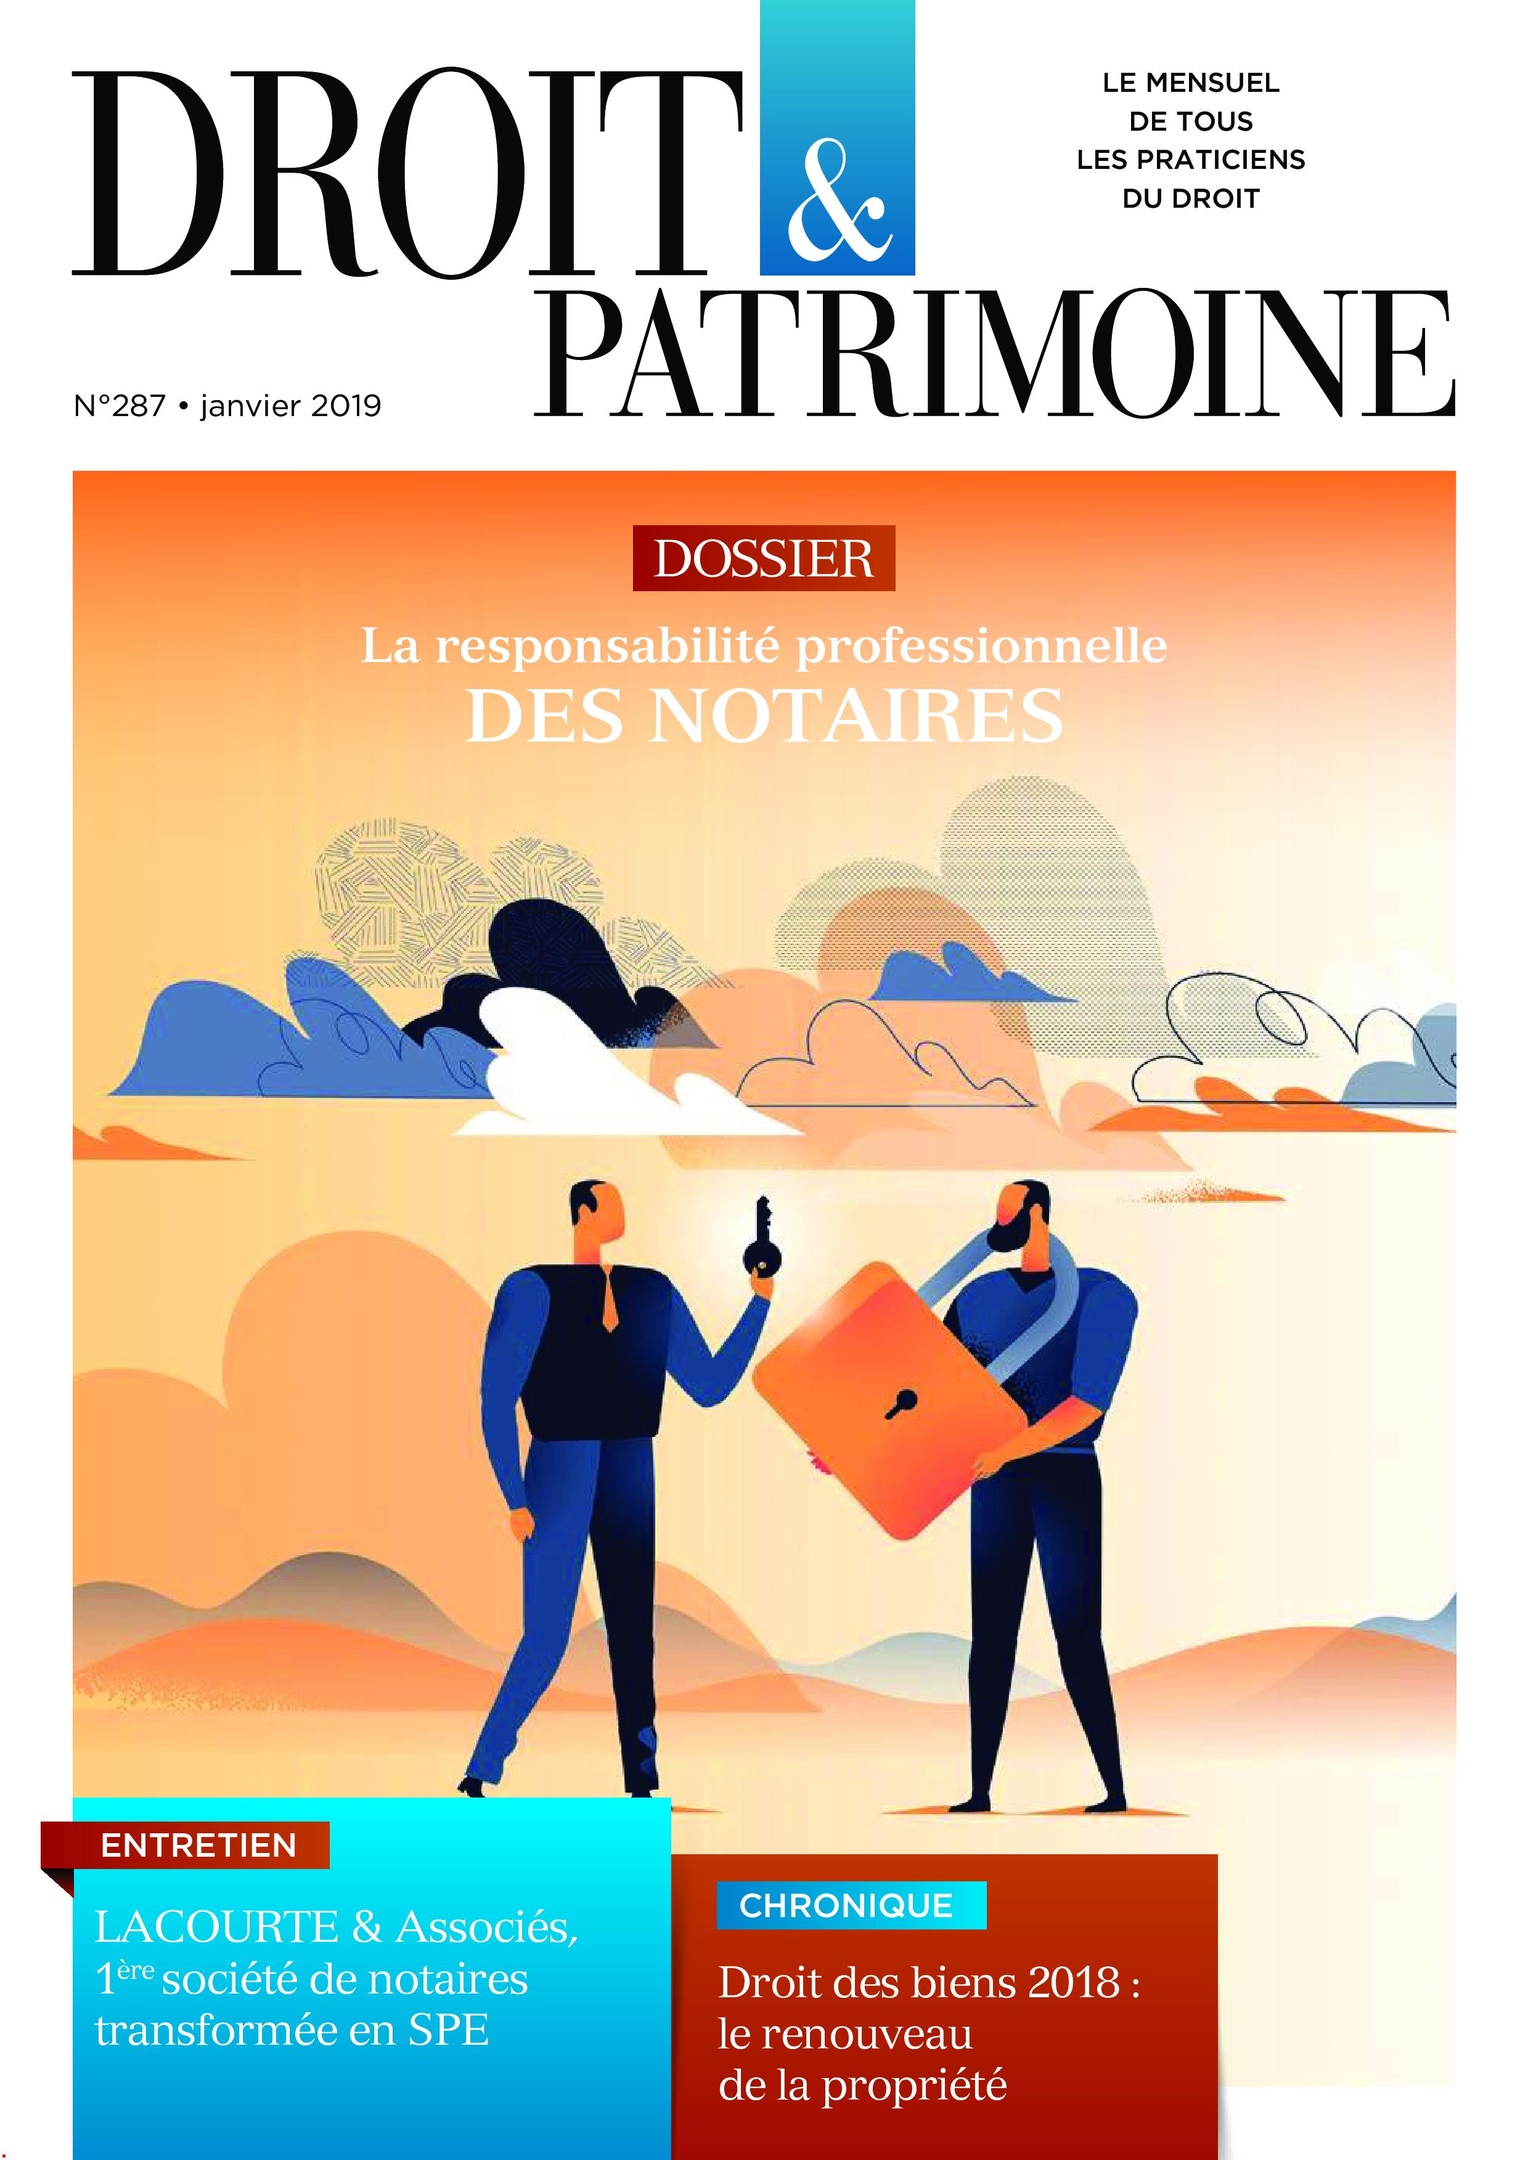 Droit & Patrimoine – 01 Janvier 2019